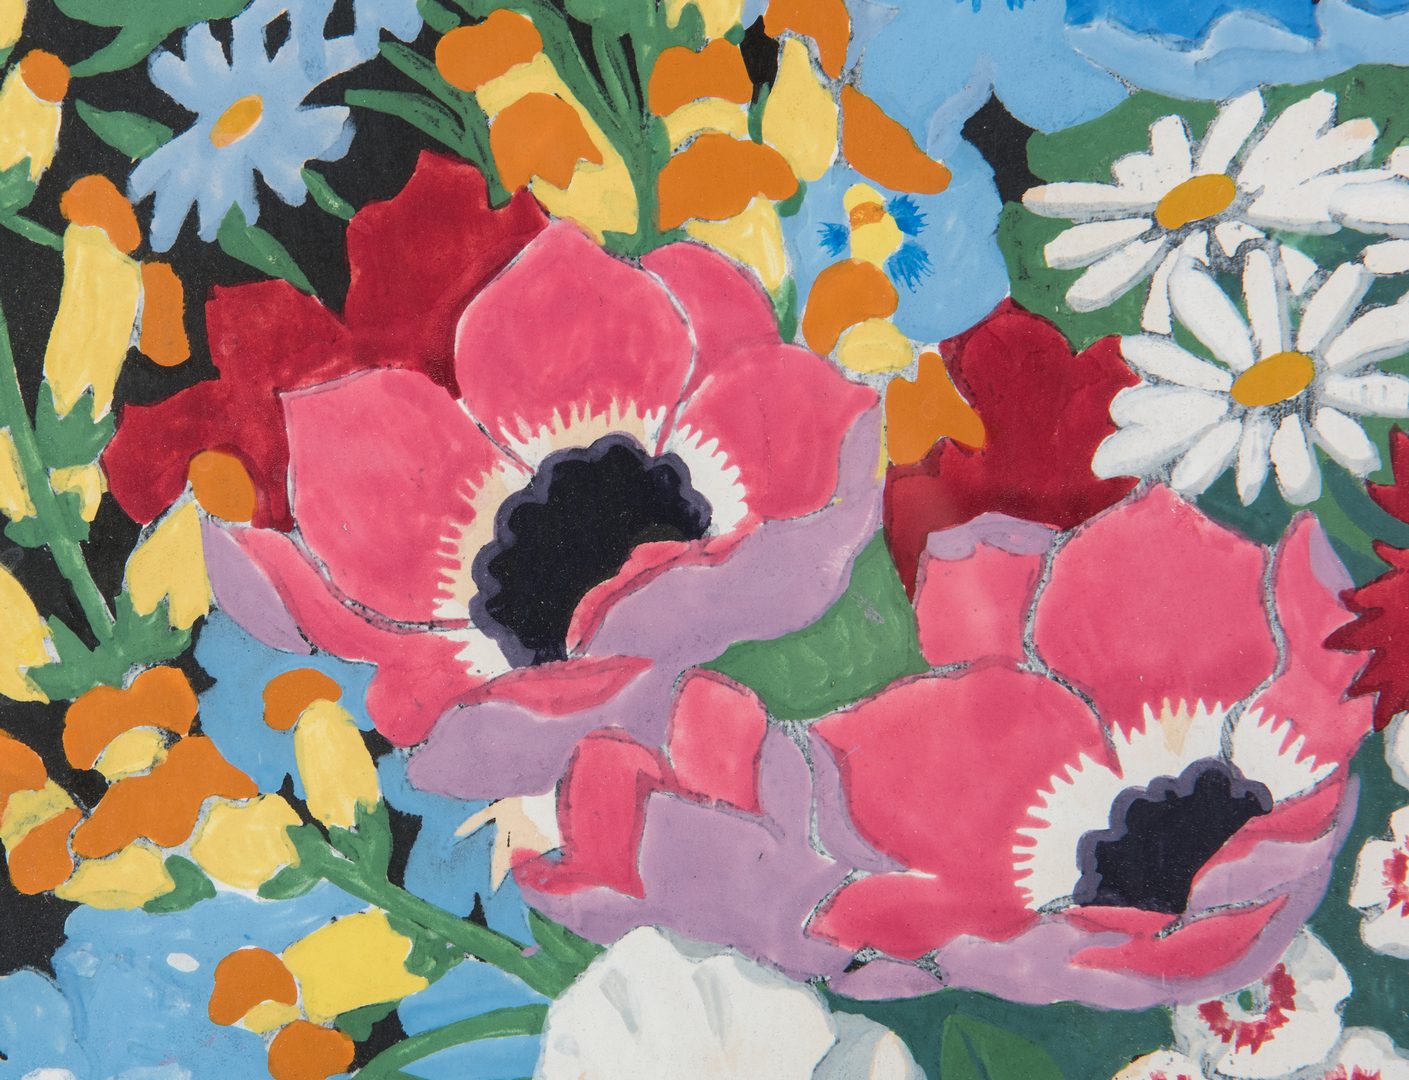 Lot 352: John Hall Thorpe Color Woodcut, Vase of Flowers